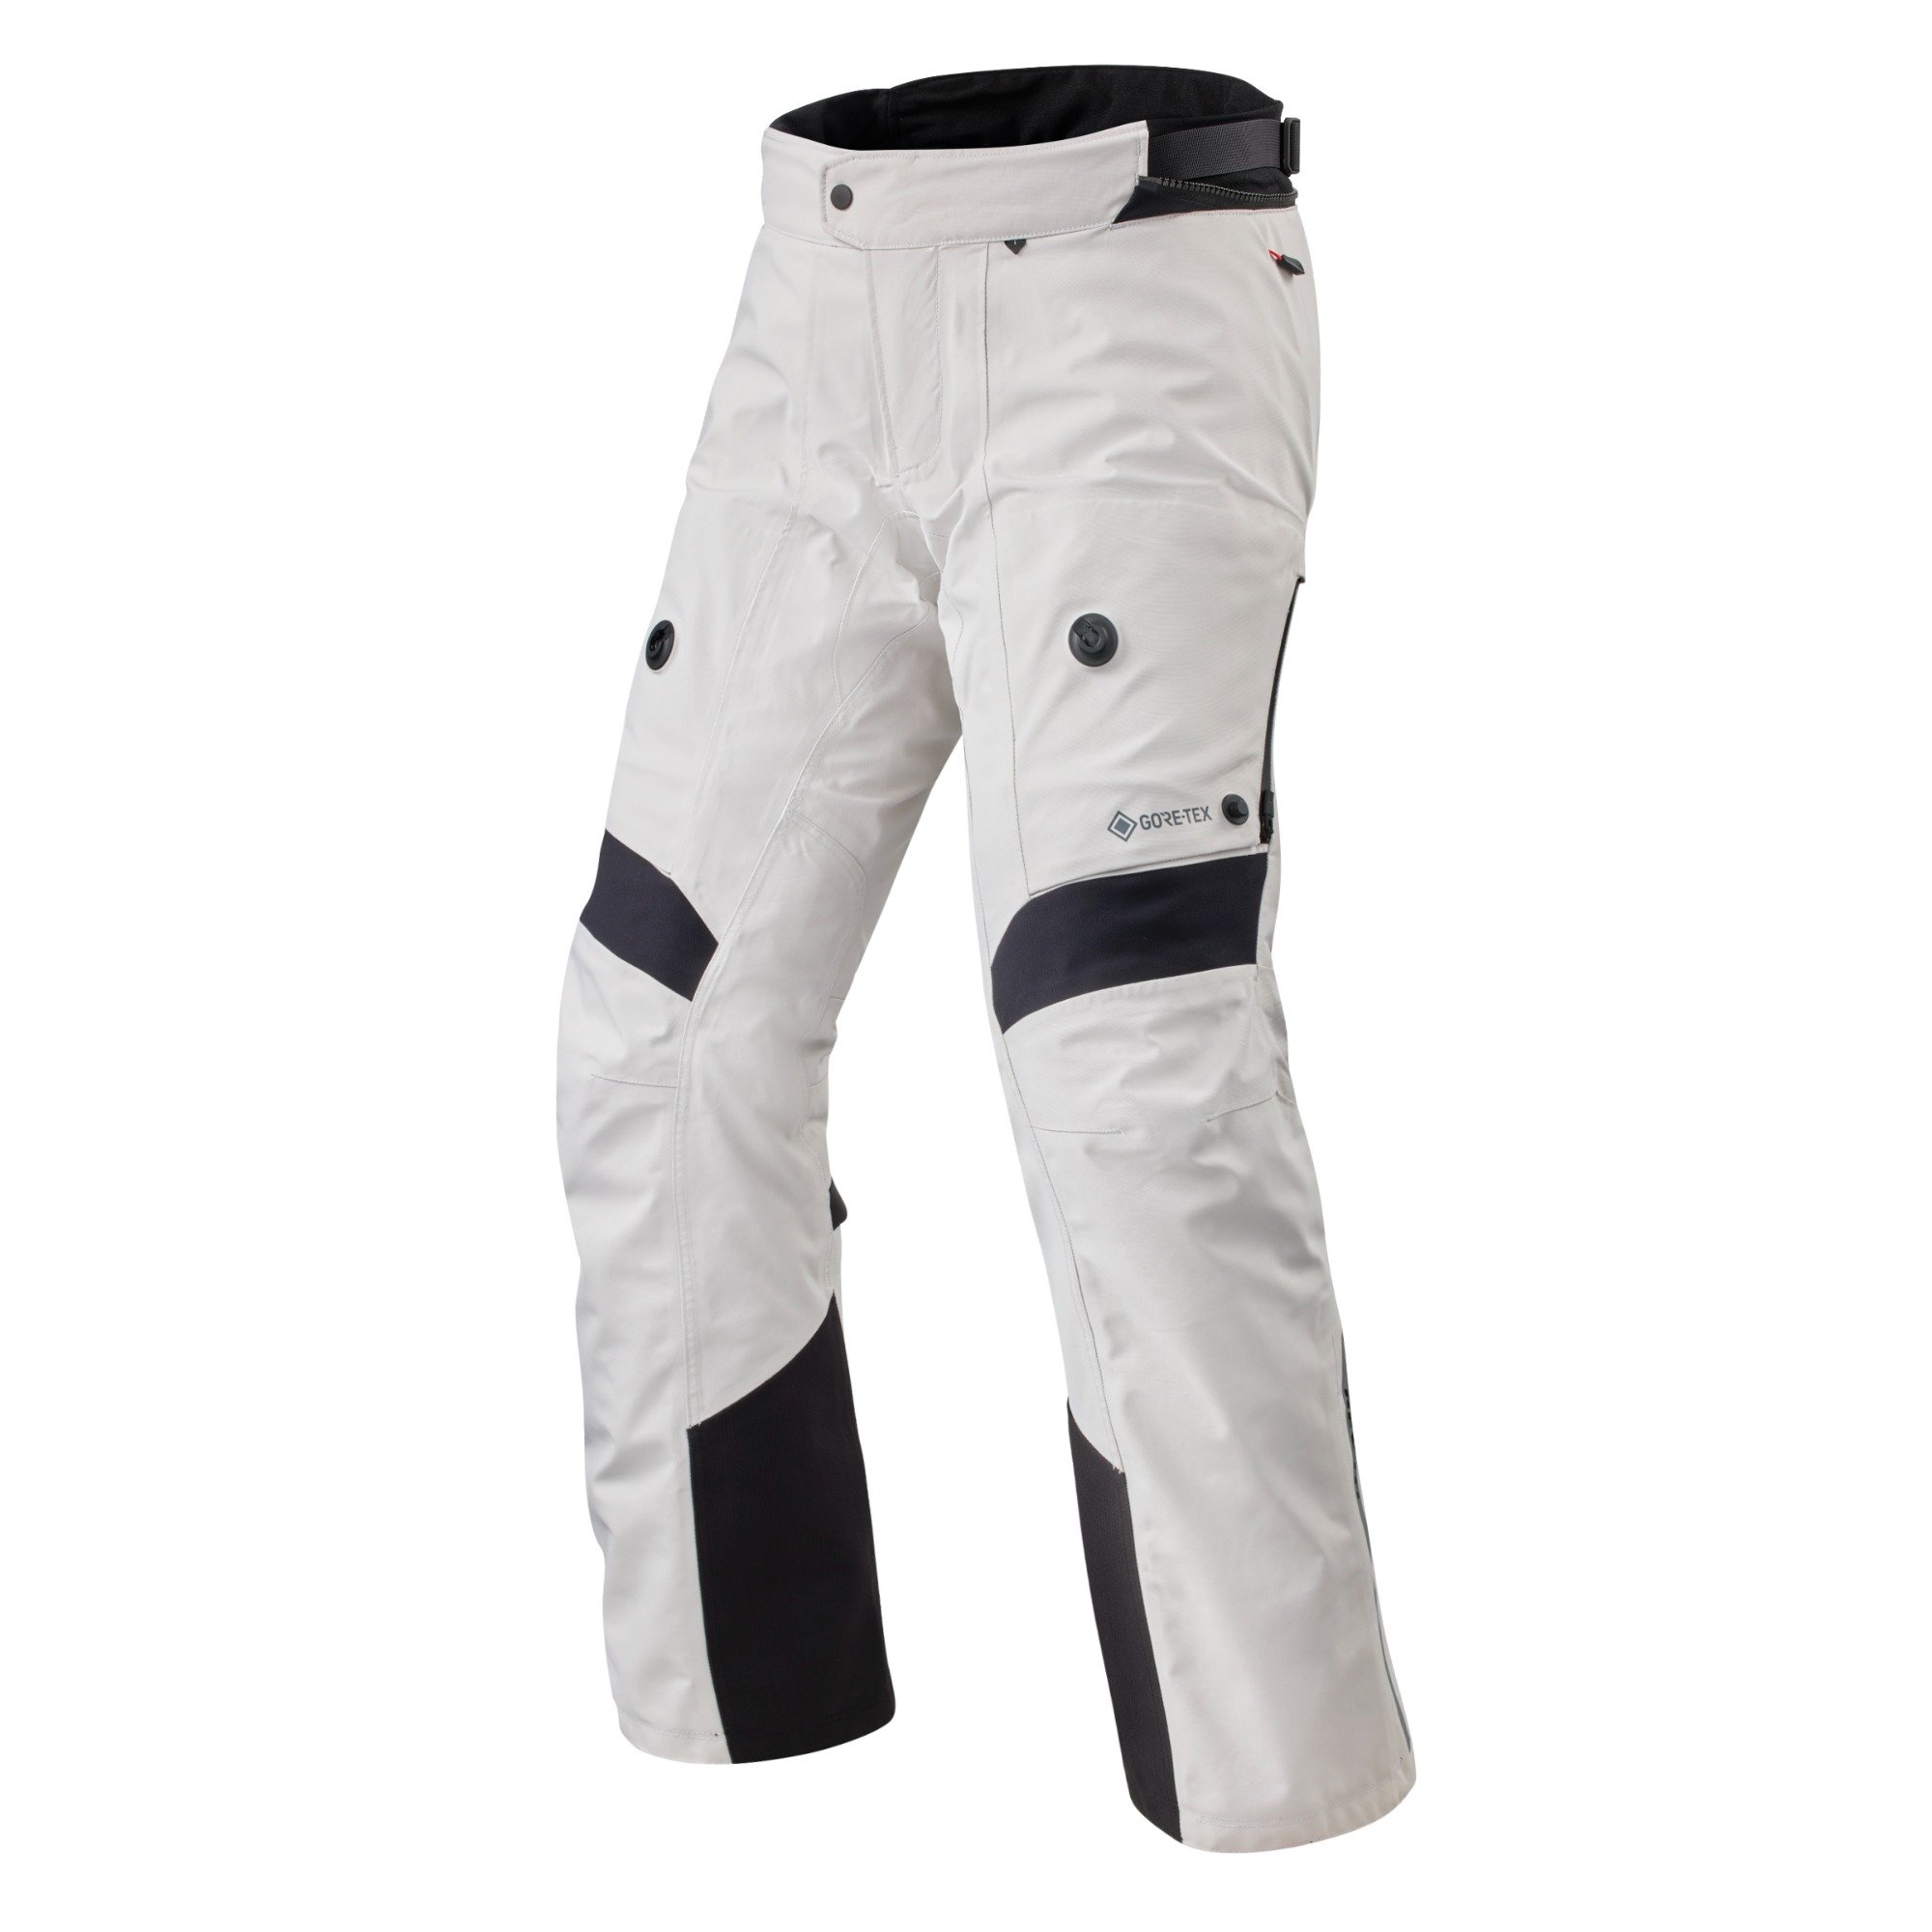 Image of REV'IT! Pants Poseidon 3 GTX Silver Black Long Motorcycle Pants Size 2XL EN